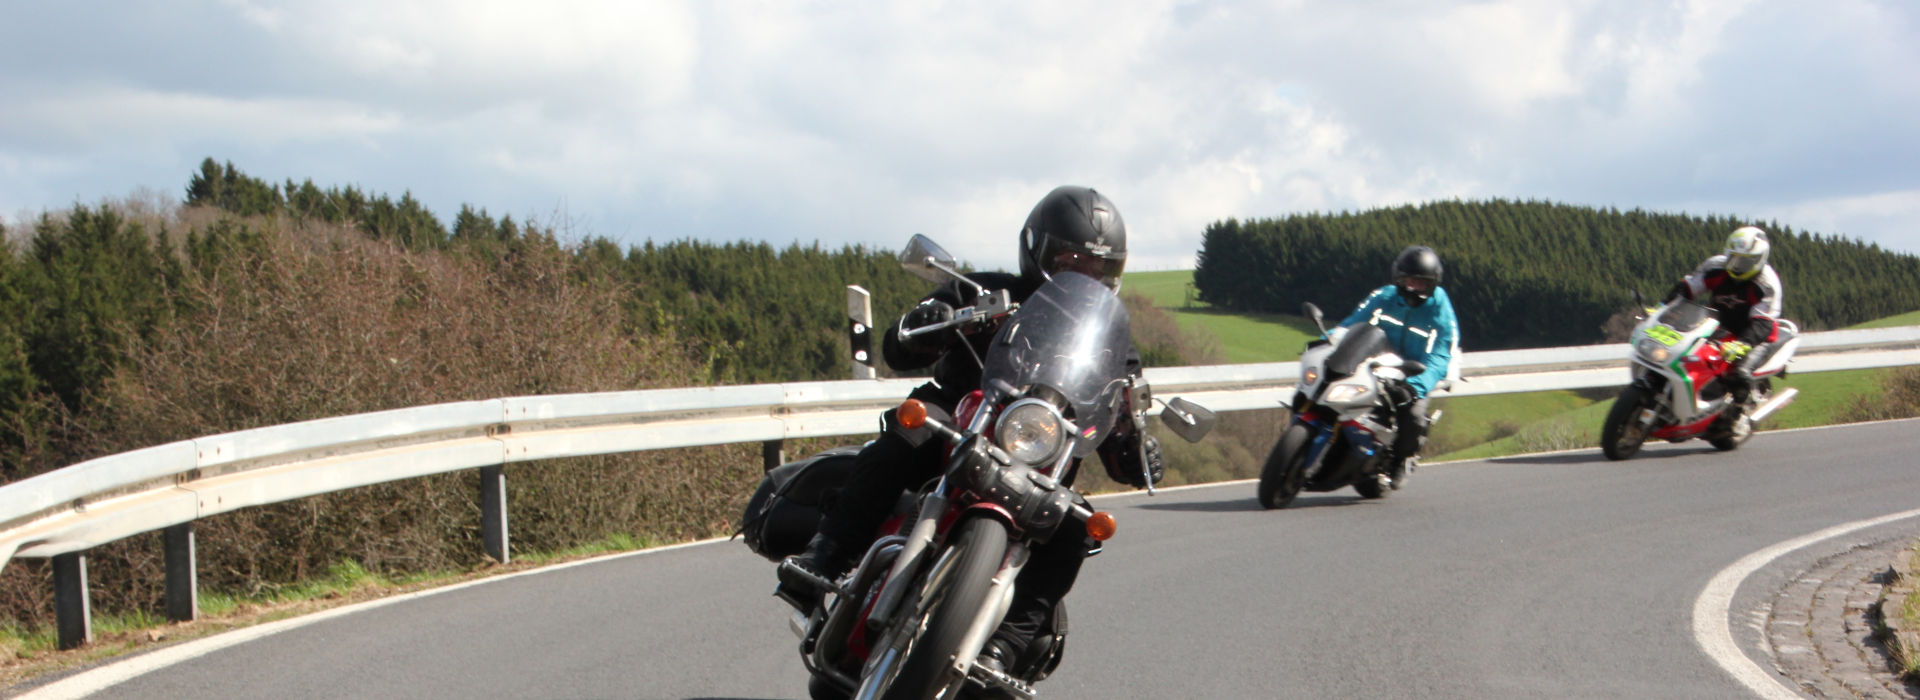 Motorrijbewijspoint Wageningen Spoedcursus motorrijlessen